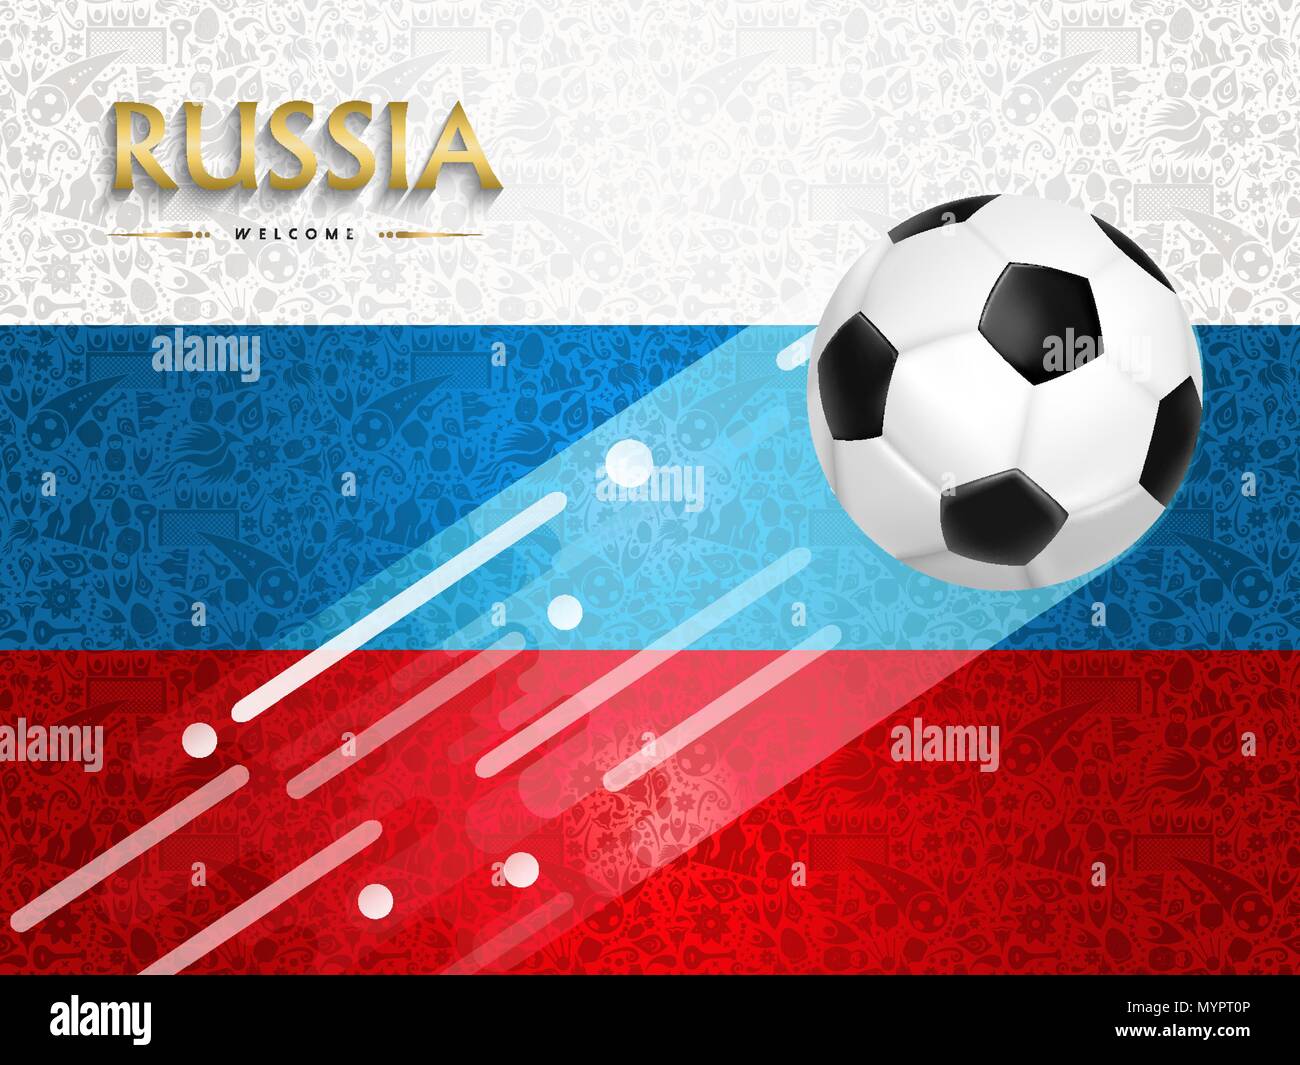 Russland Fußball event Abbildung, Hintergrund Design von Fußball-Ball mit russischen Flagge Farben. EPS 10 Vektor. Stock Vektor